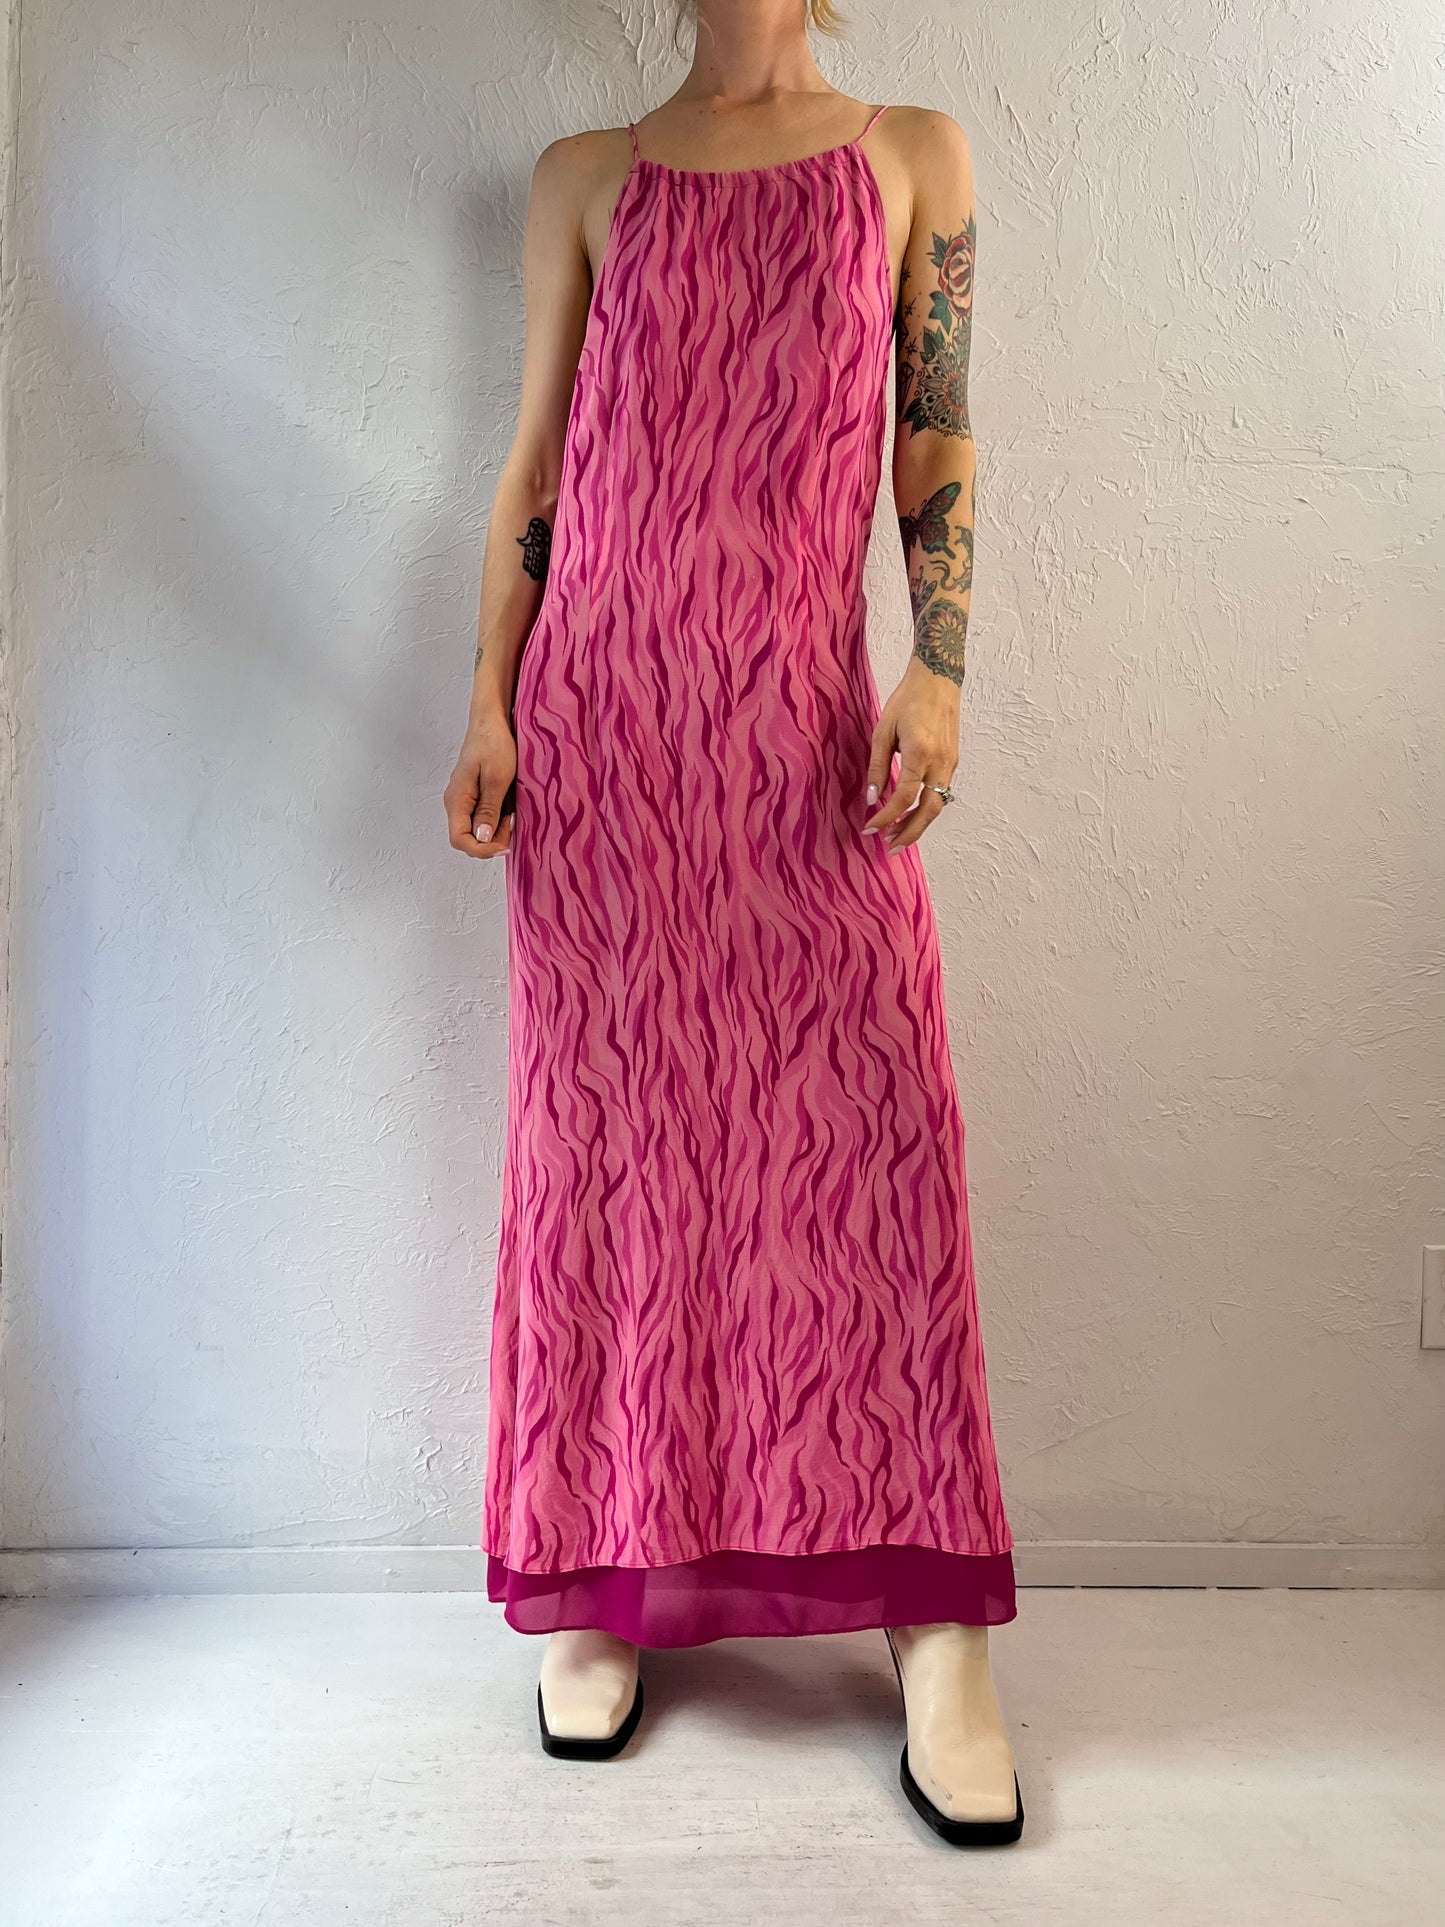 Y2k 'Cynthia Howie Maggy' Pink Zebra Dress / 6